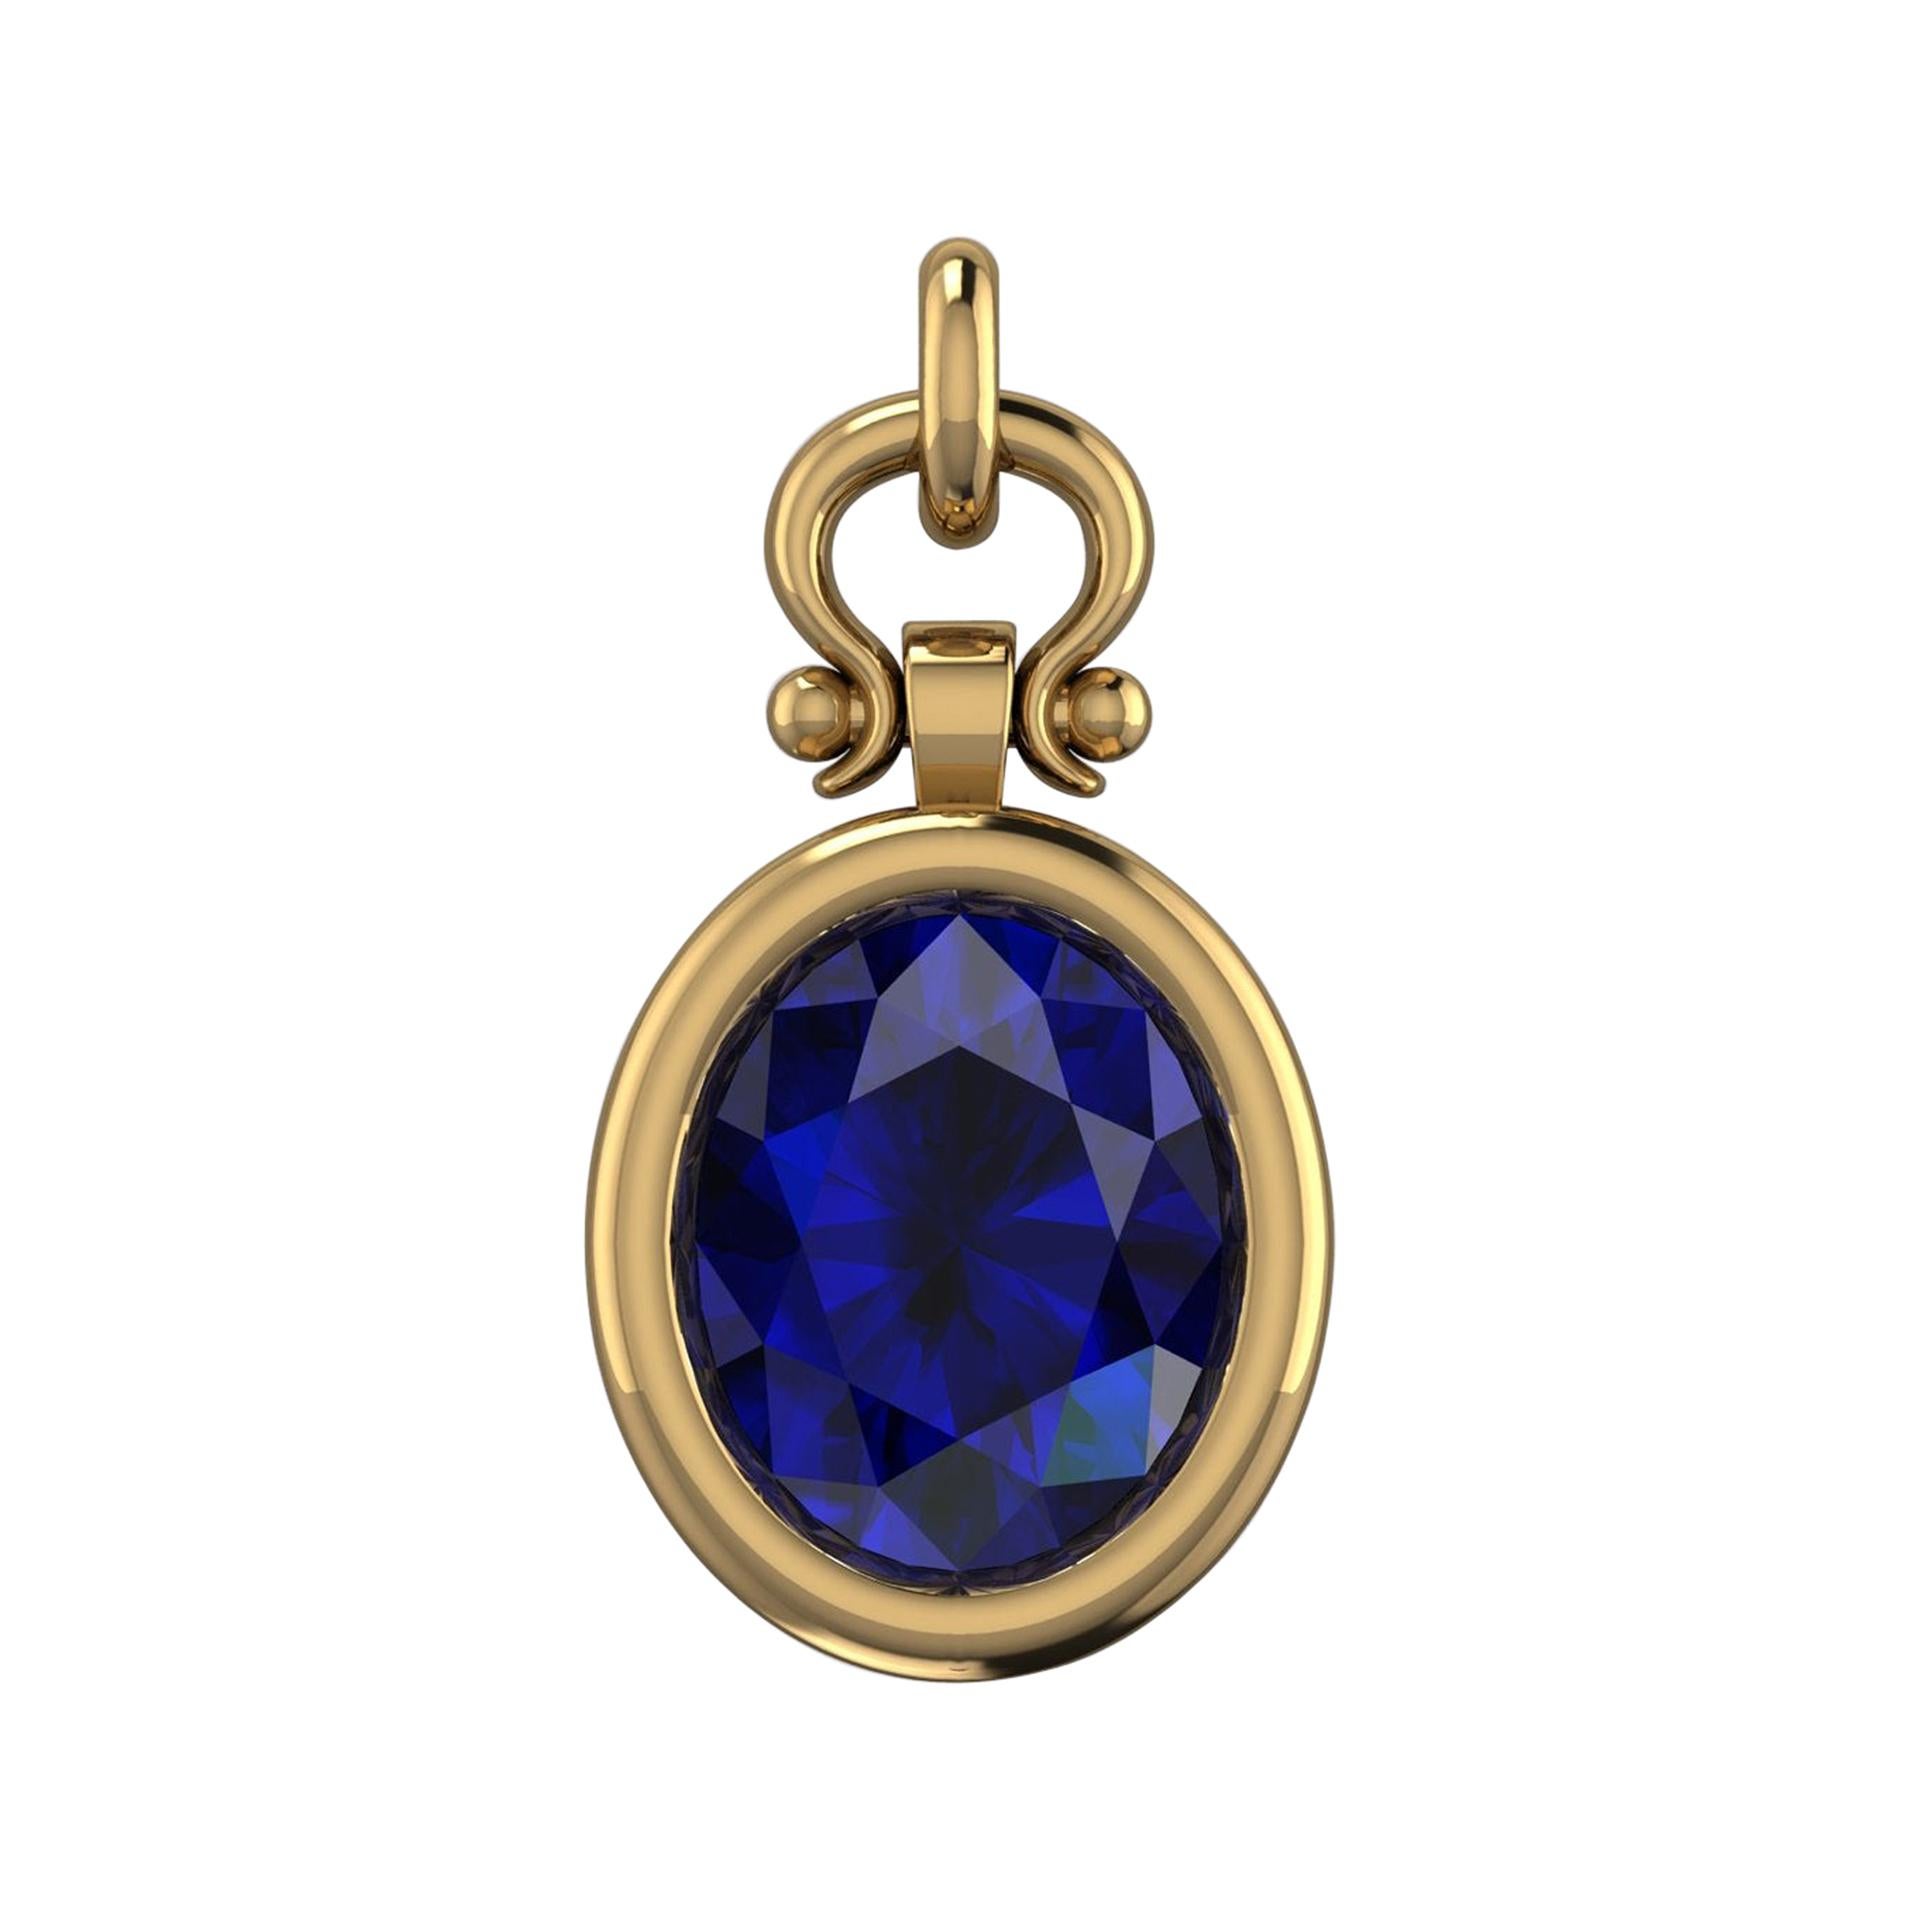 Berberyn Certified 2.64 Carat Oval Cut Blue Sapphire Pendant Necklace in 18k